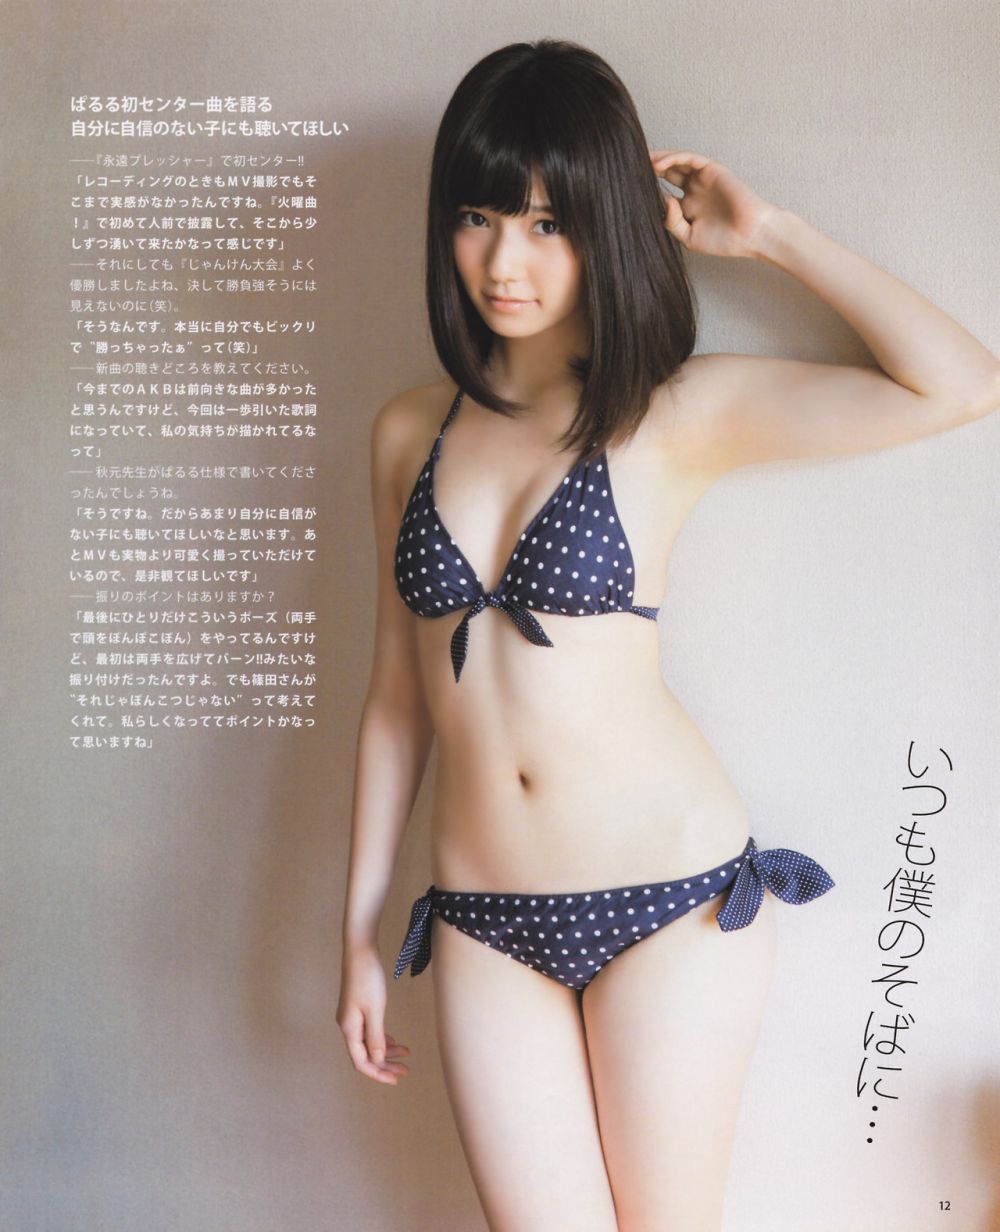 Haruka Shimazaki Sexy and Hottest Photos , Latest Pics